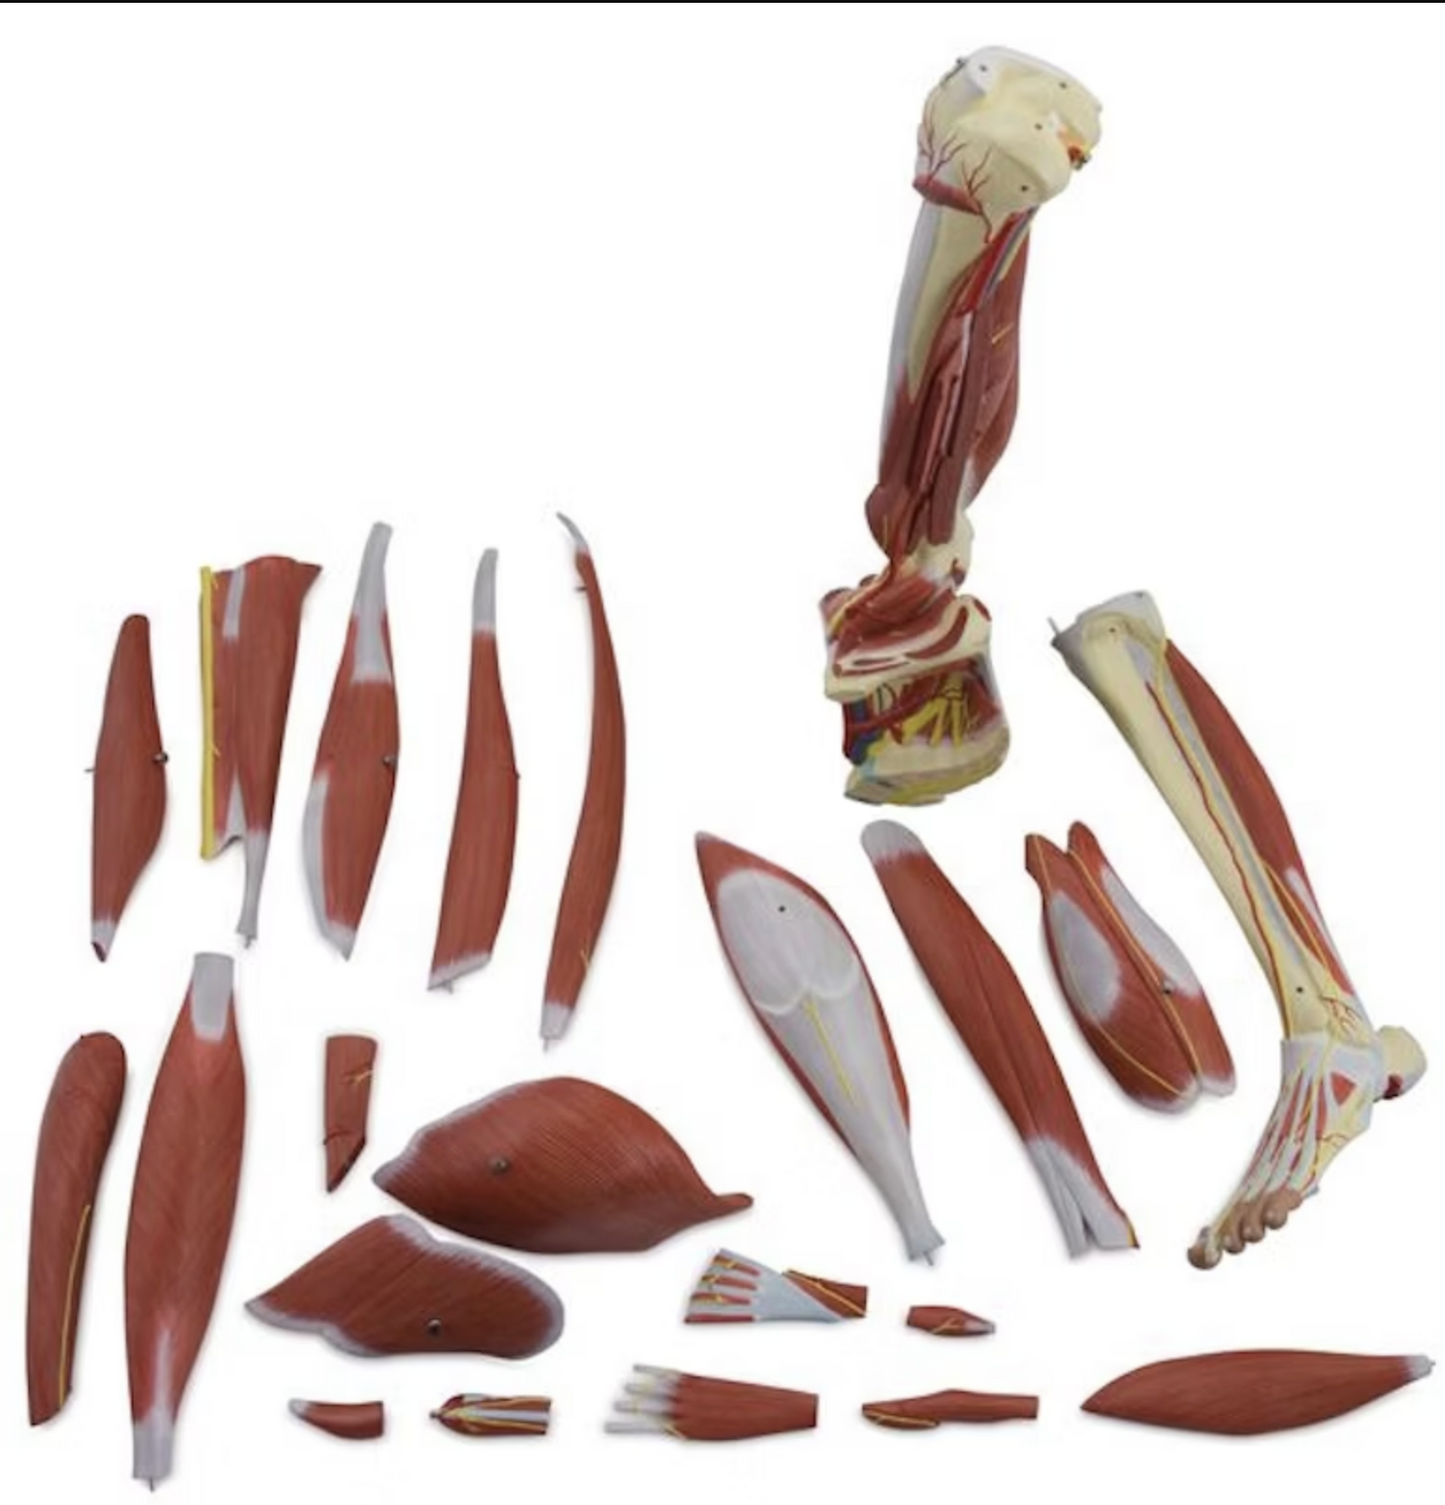 Anatomisk model af benets muskulatur, kar og nerver i 23 dele